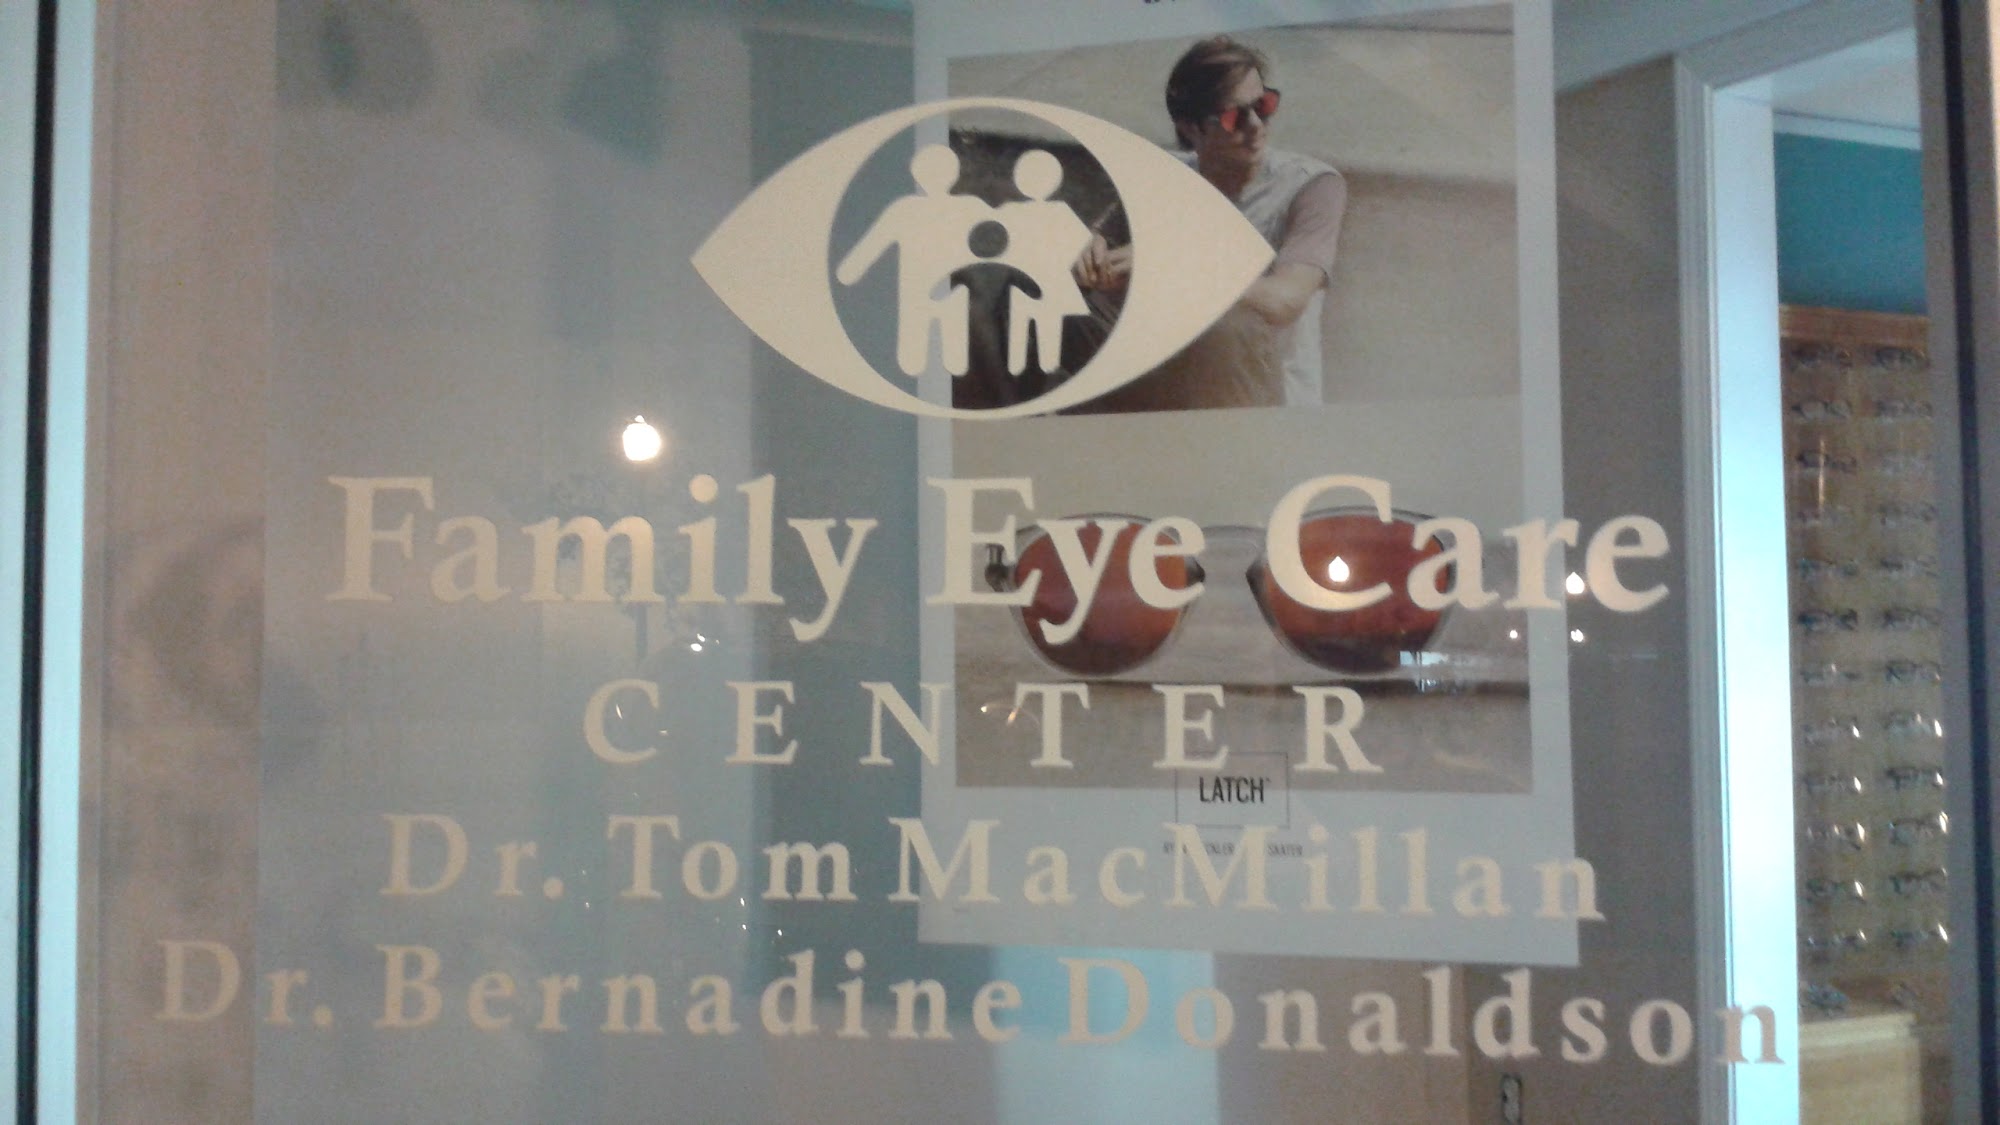 Family Eye Care Center 118 Musgrove St, Clinton South Carolina 29325